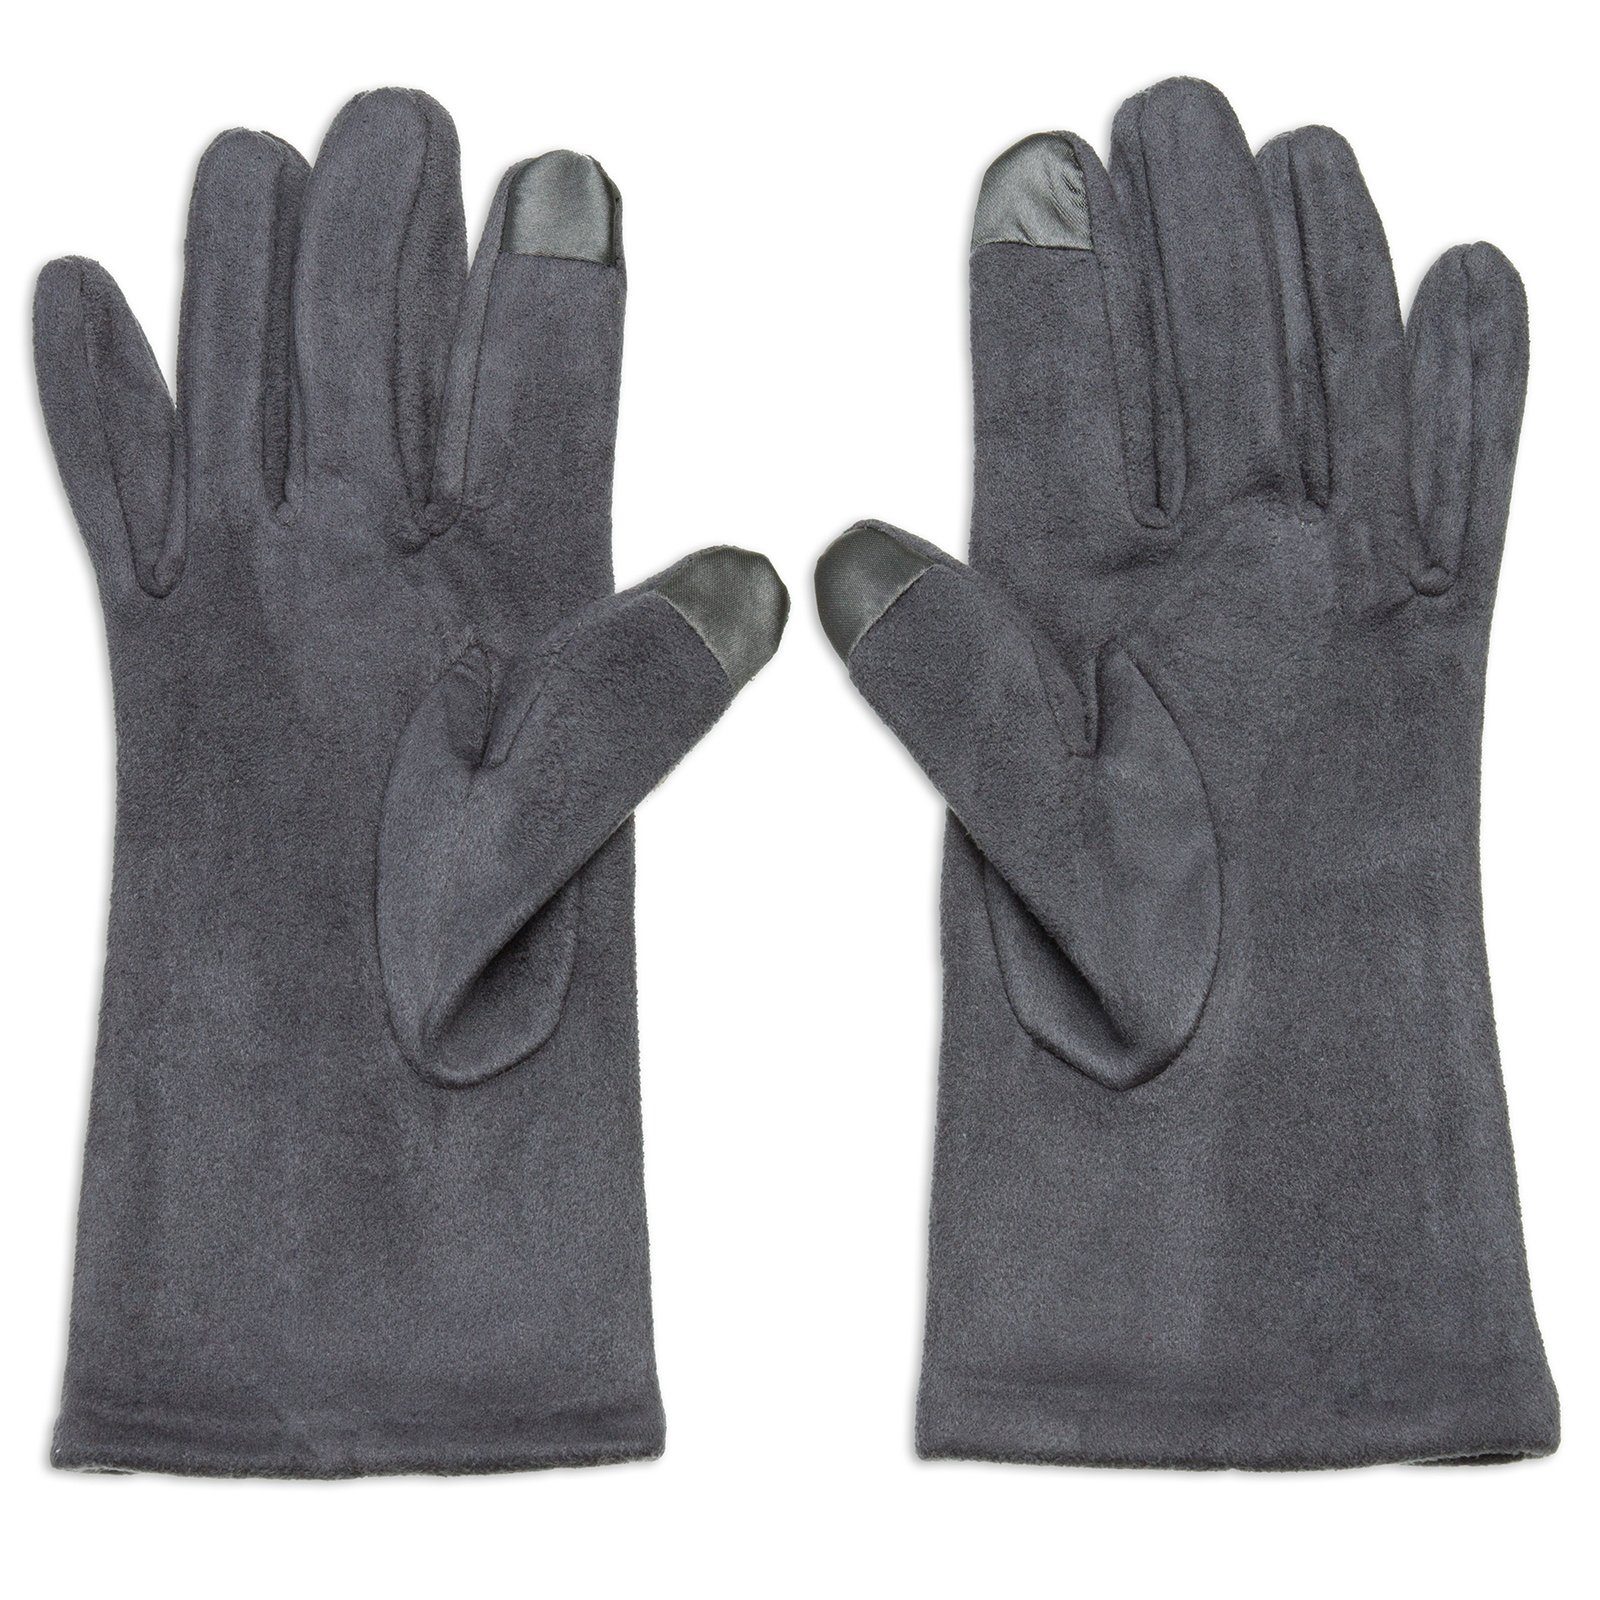 Strickhandschuhe Handschuhe Touchscreen und elegante Damen Strass Funktion mit grau klassisch Dekor GLV011 Caspar